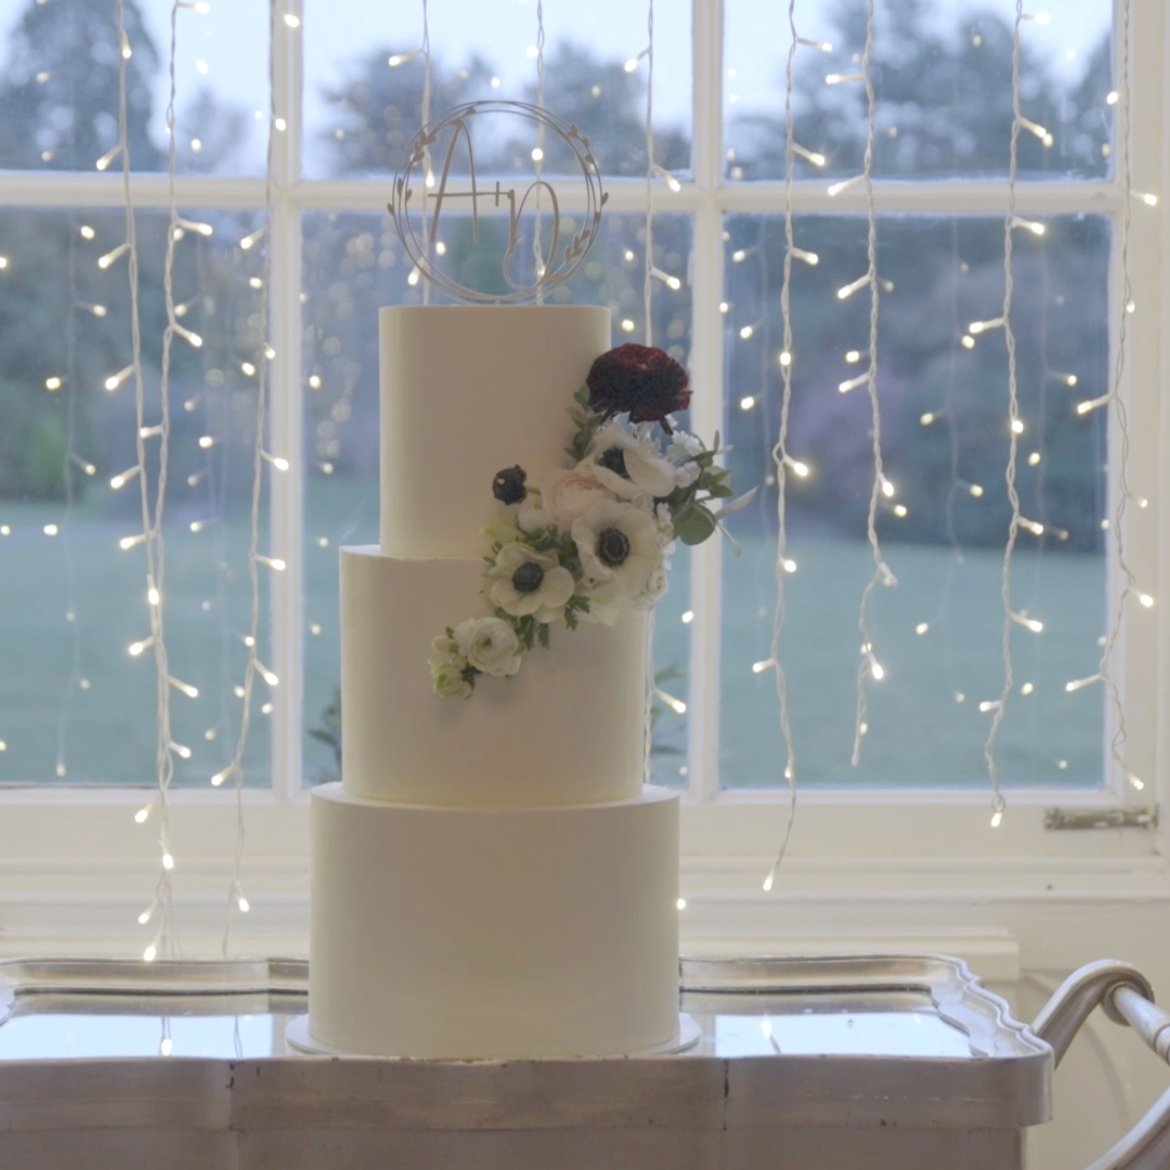 Iced Cakes - The Honey Bee Wedding Cake Company